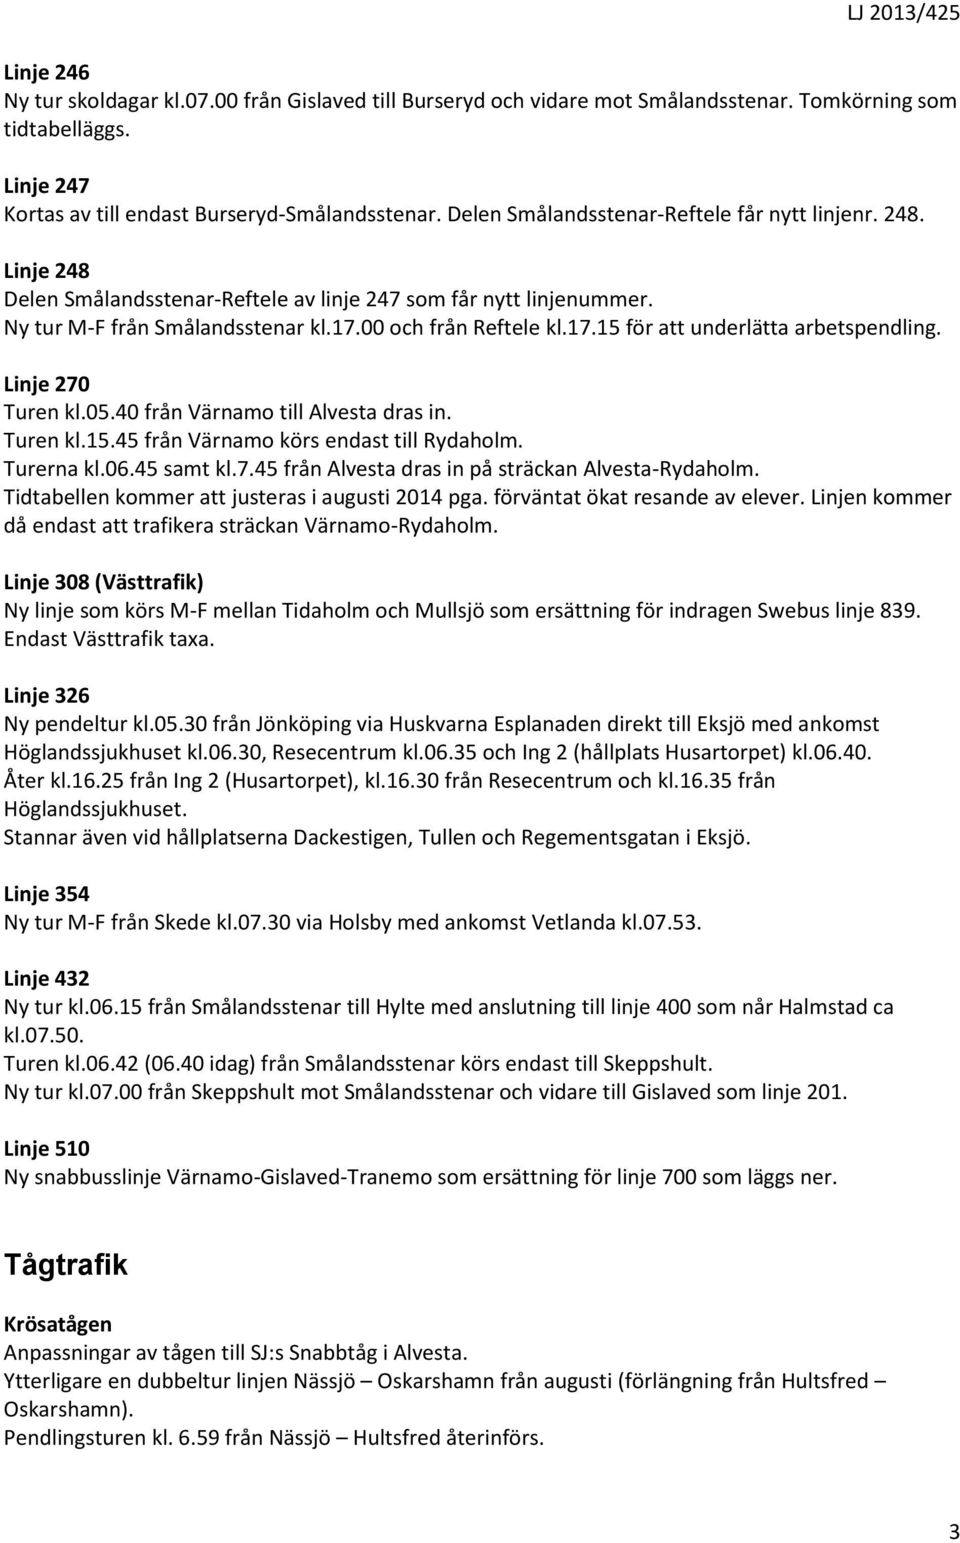 00 och från Reftele kl.17.15 för att underlätta arbetspendling. Linje 270 Turen kl.05.40 från Värnamo till Alvesta dras in. Turen kl.15.45 från Värnamo körs endast till Rydaholm. Turerna kl.06.